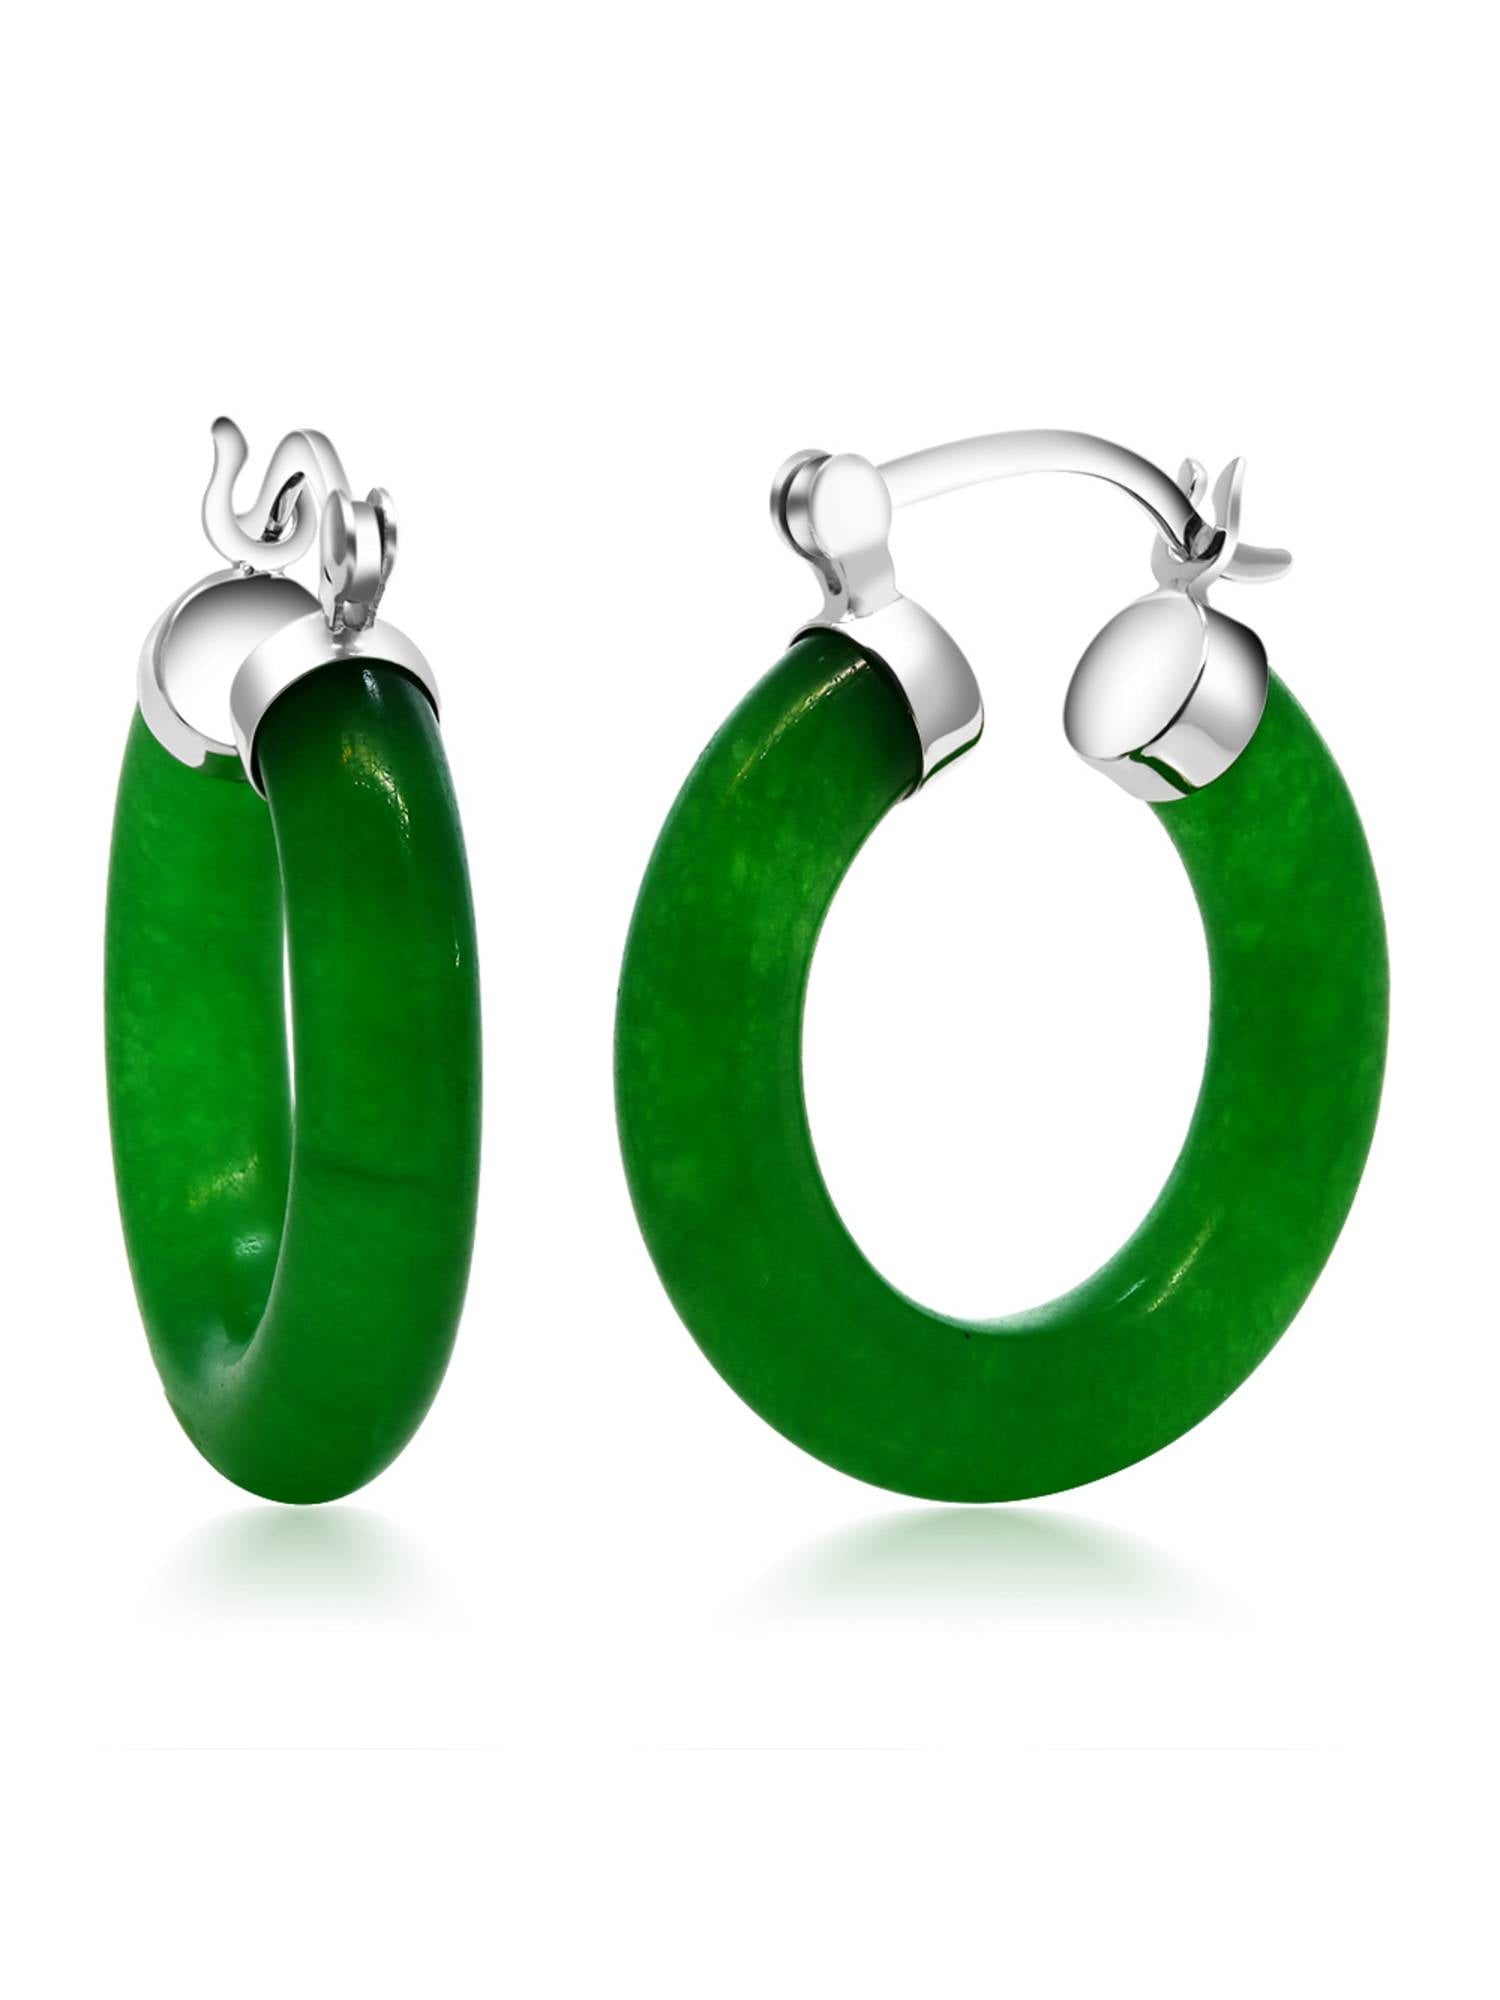 Jade Hoop Earrings Top Sellers, 53% OFF | www.ingeniovirtual.com